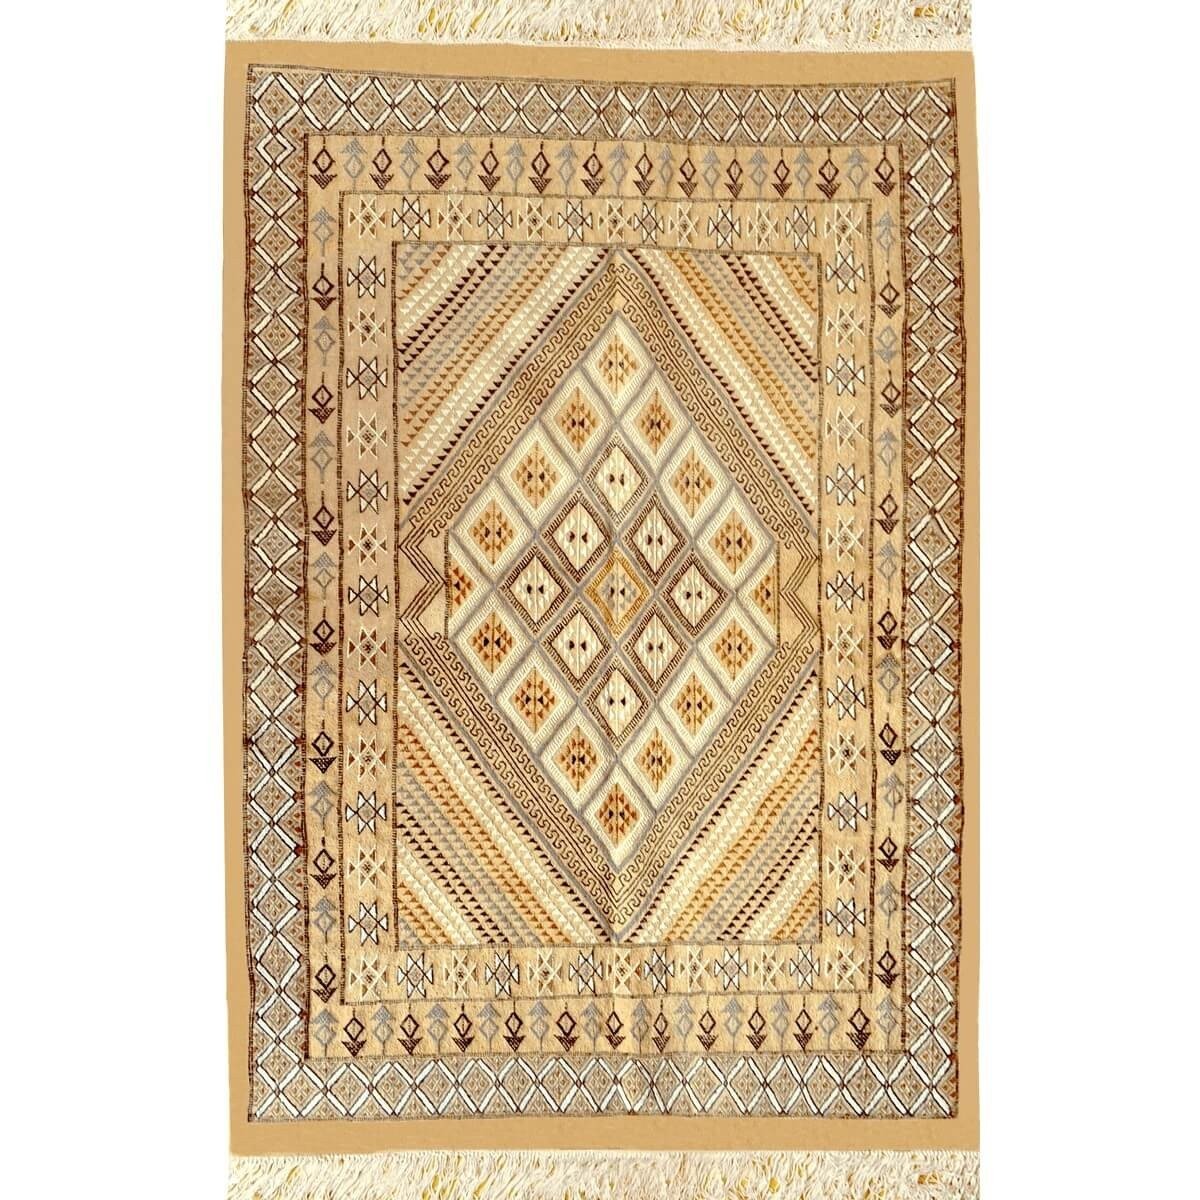 Berber tapijt Groot Tapijt Margoum Farhan 160x250 Beige (Handgeweven, Wol, Tunesië) Tunesisch Margoum Tapijt uit de stad Kairoua